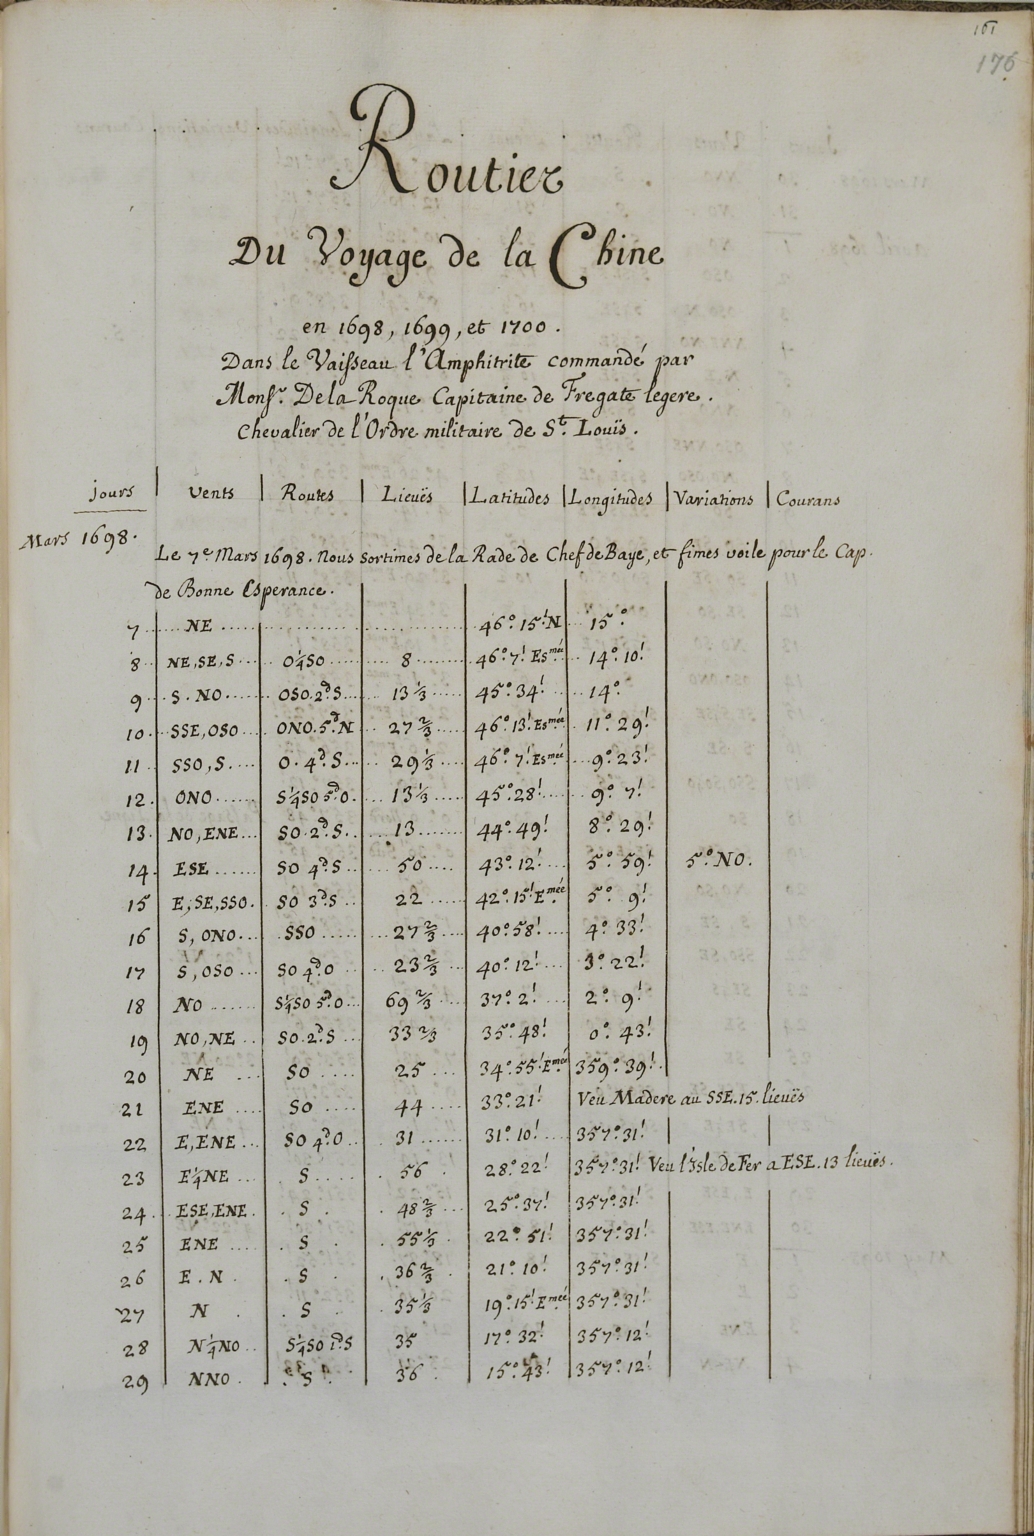 [Table of jours, vents, routes, lieuës, latitudes, longitudes, variantions and courans, Mars 1698].